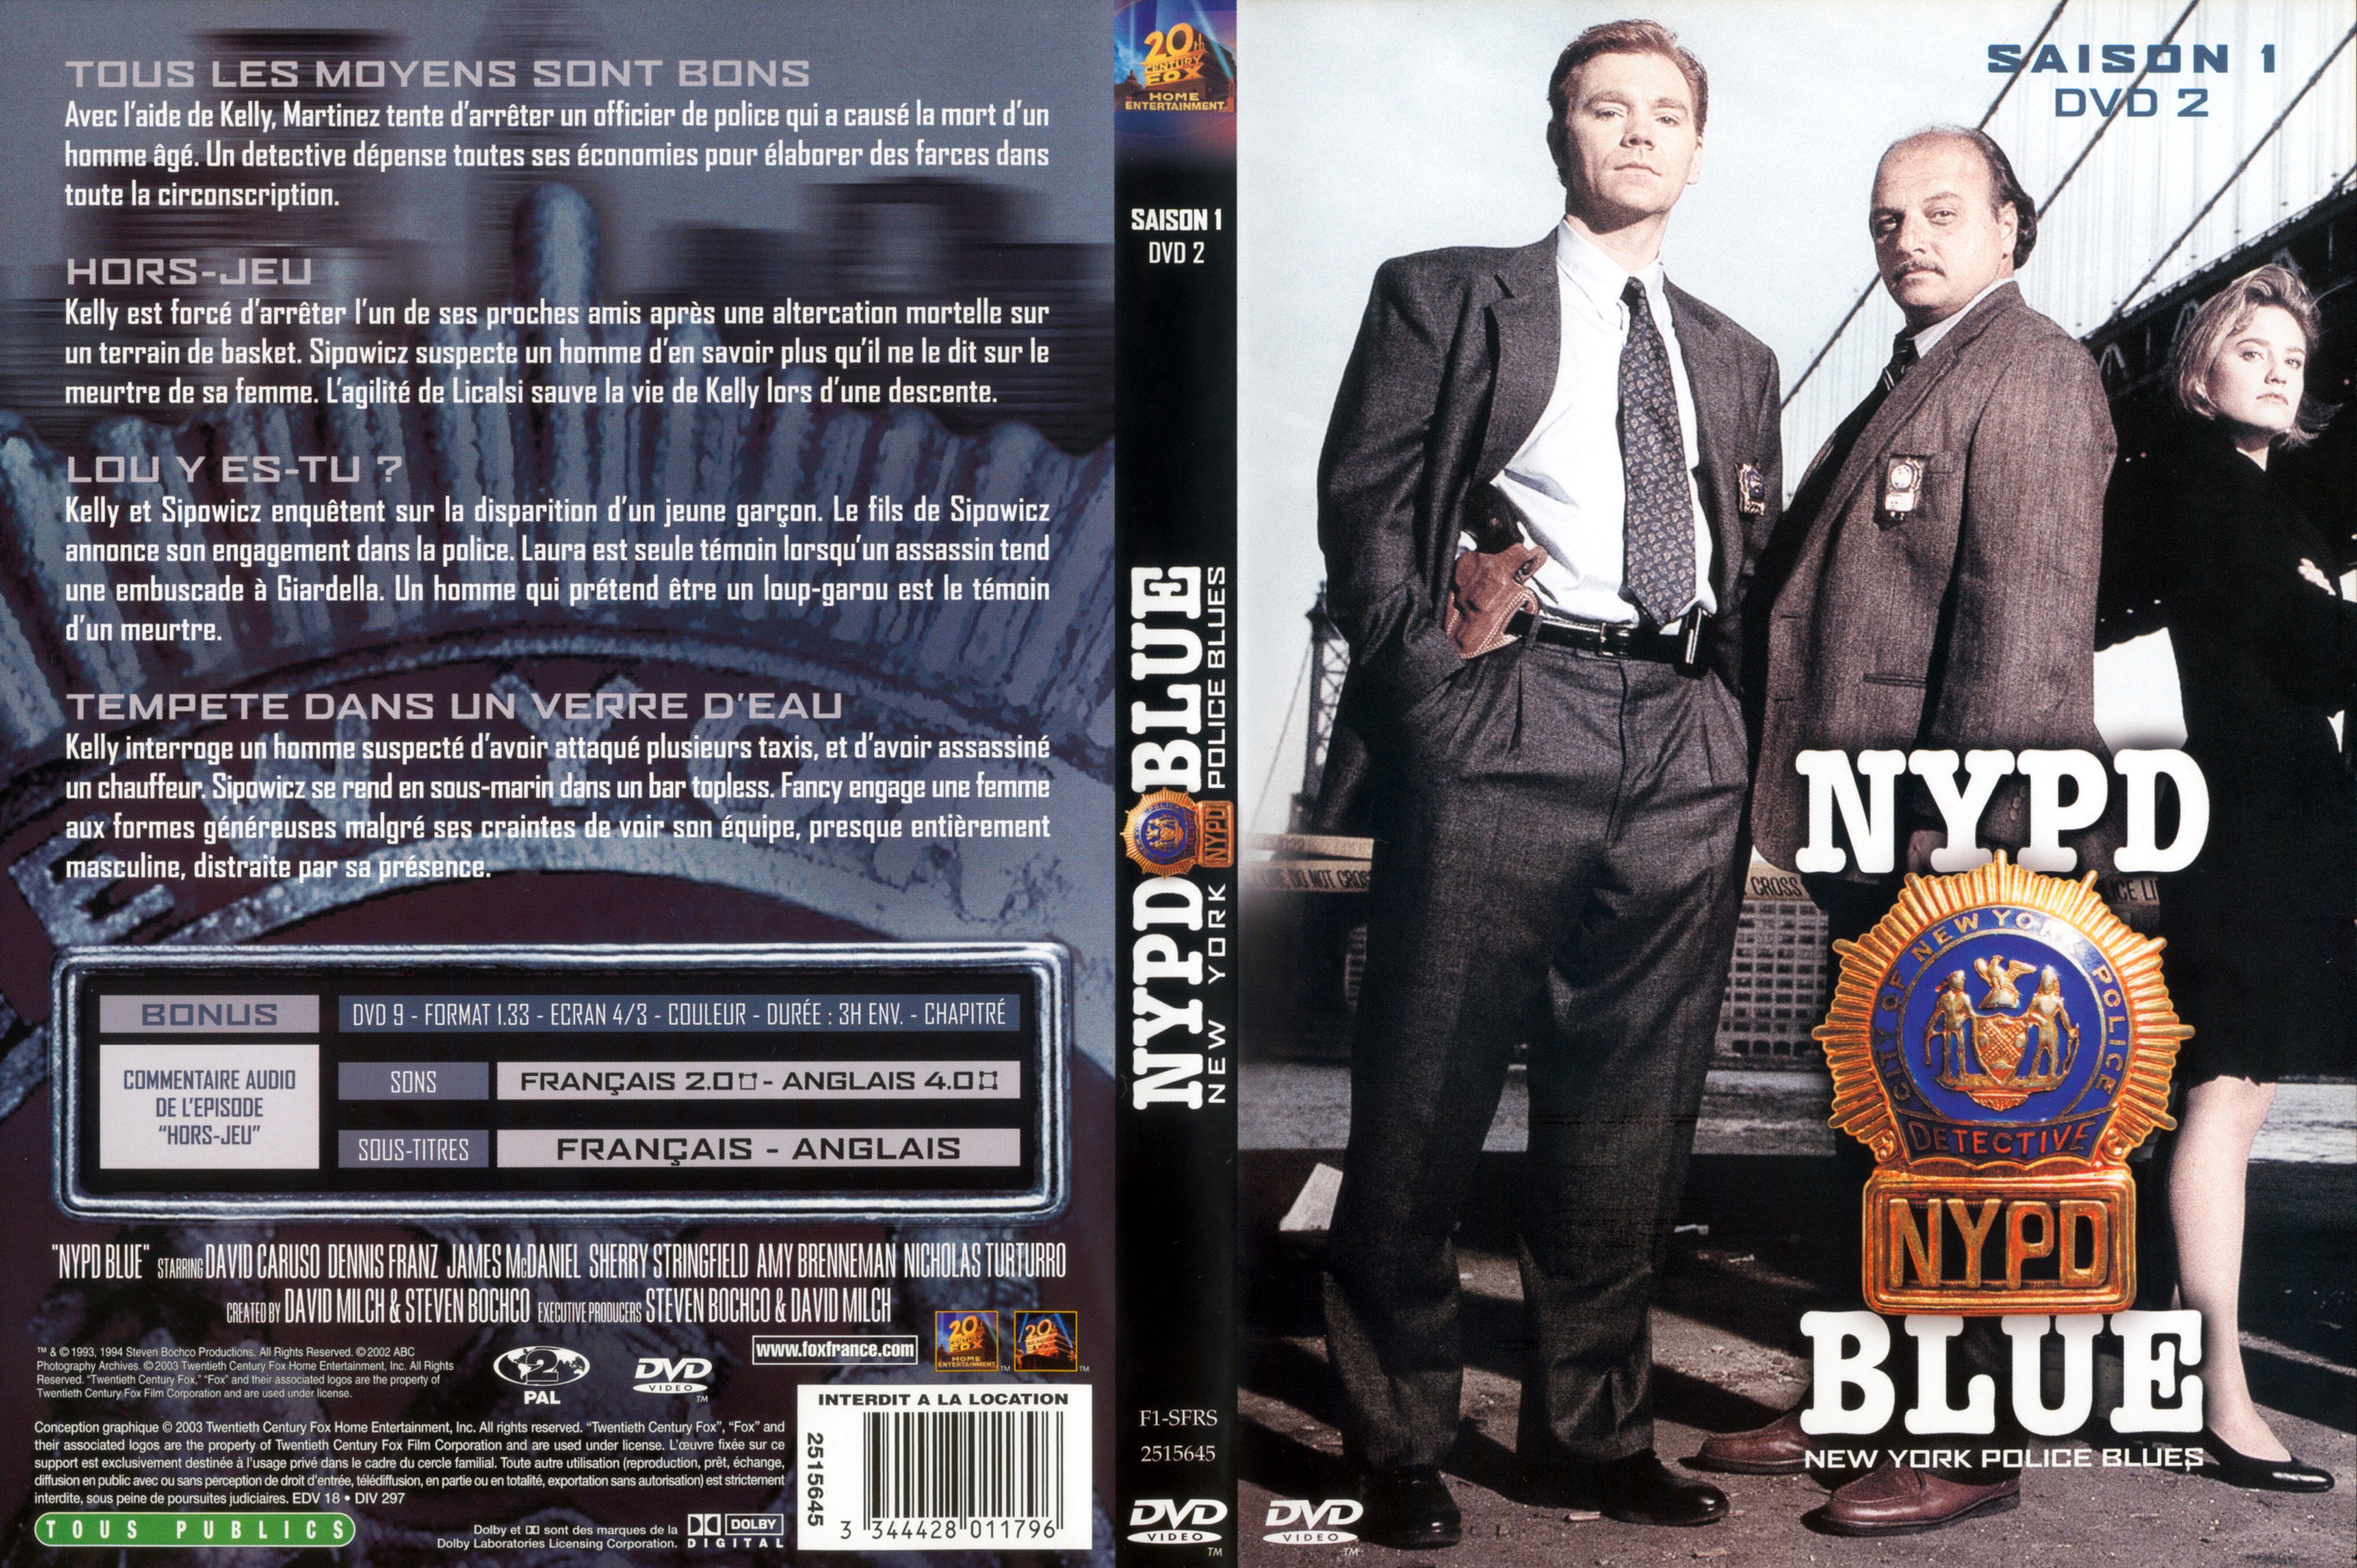 Jaquette DVD NYPD Blue saison 01 dvd 02